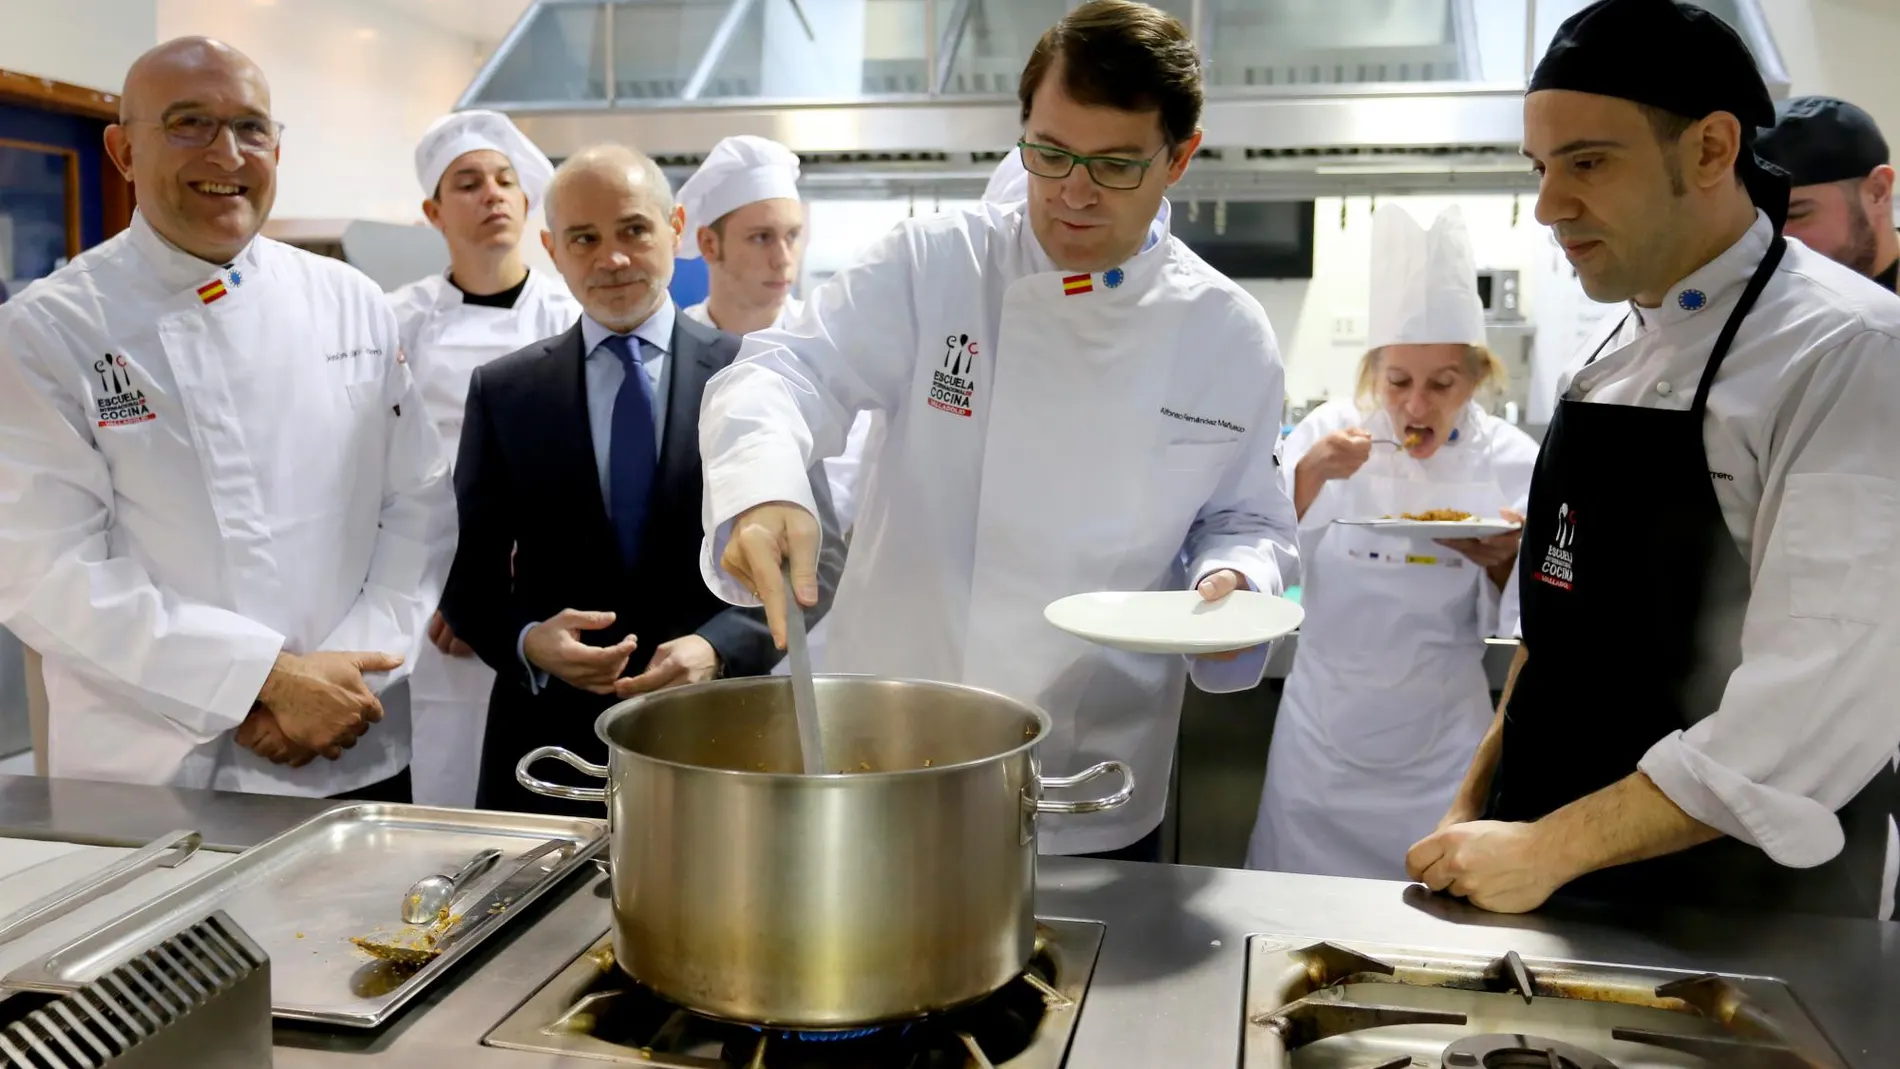 El presidente del PP de Castilla y León, Alfonso Fernández Mañueco, acompañado de Jesús Julio Carnero y Víctor Caramanza, visita la Escuela Internacional de Cocina de Valladolid